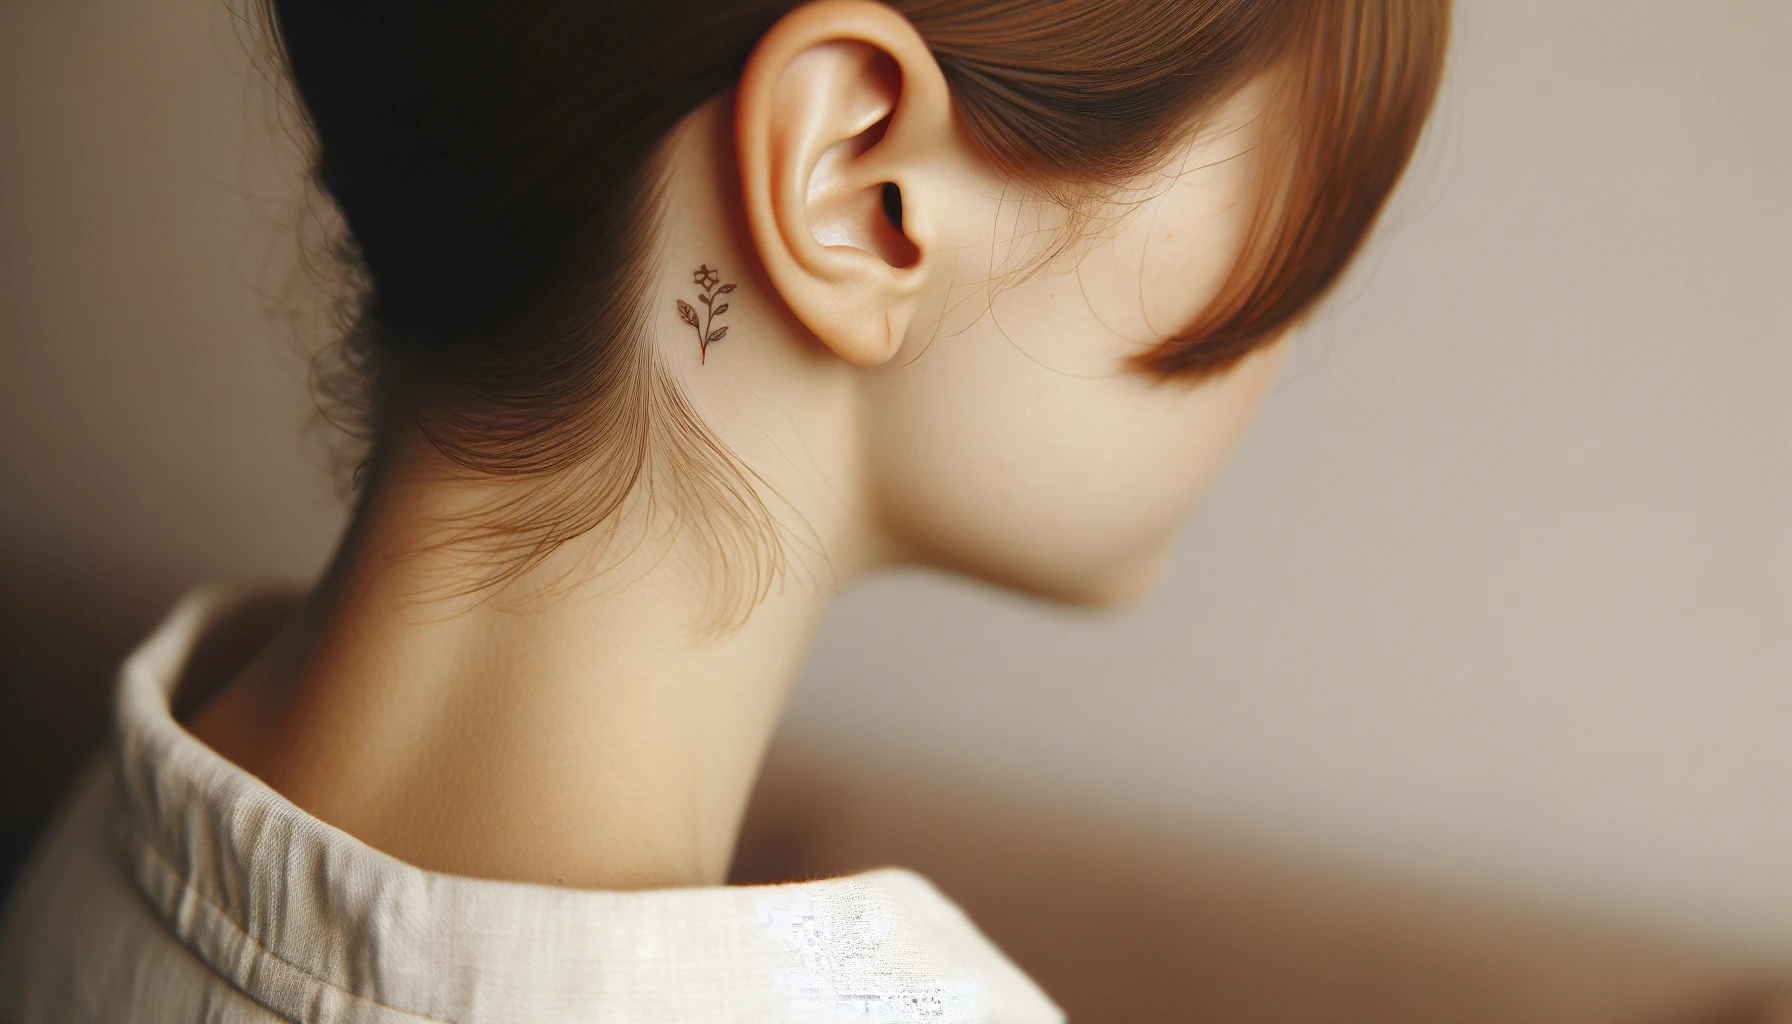 Drobny tatuaż z delikatnym motywem roślinnym akcentuje obszar za uchem kobiety. Proste linie i zarys liści tworzą subtelny, jednak wyrazisty obraz na jej skórze